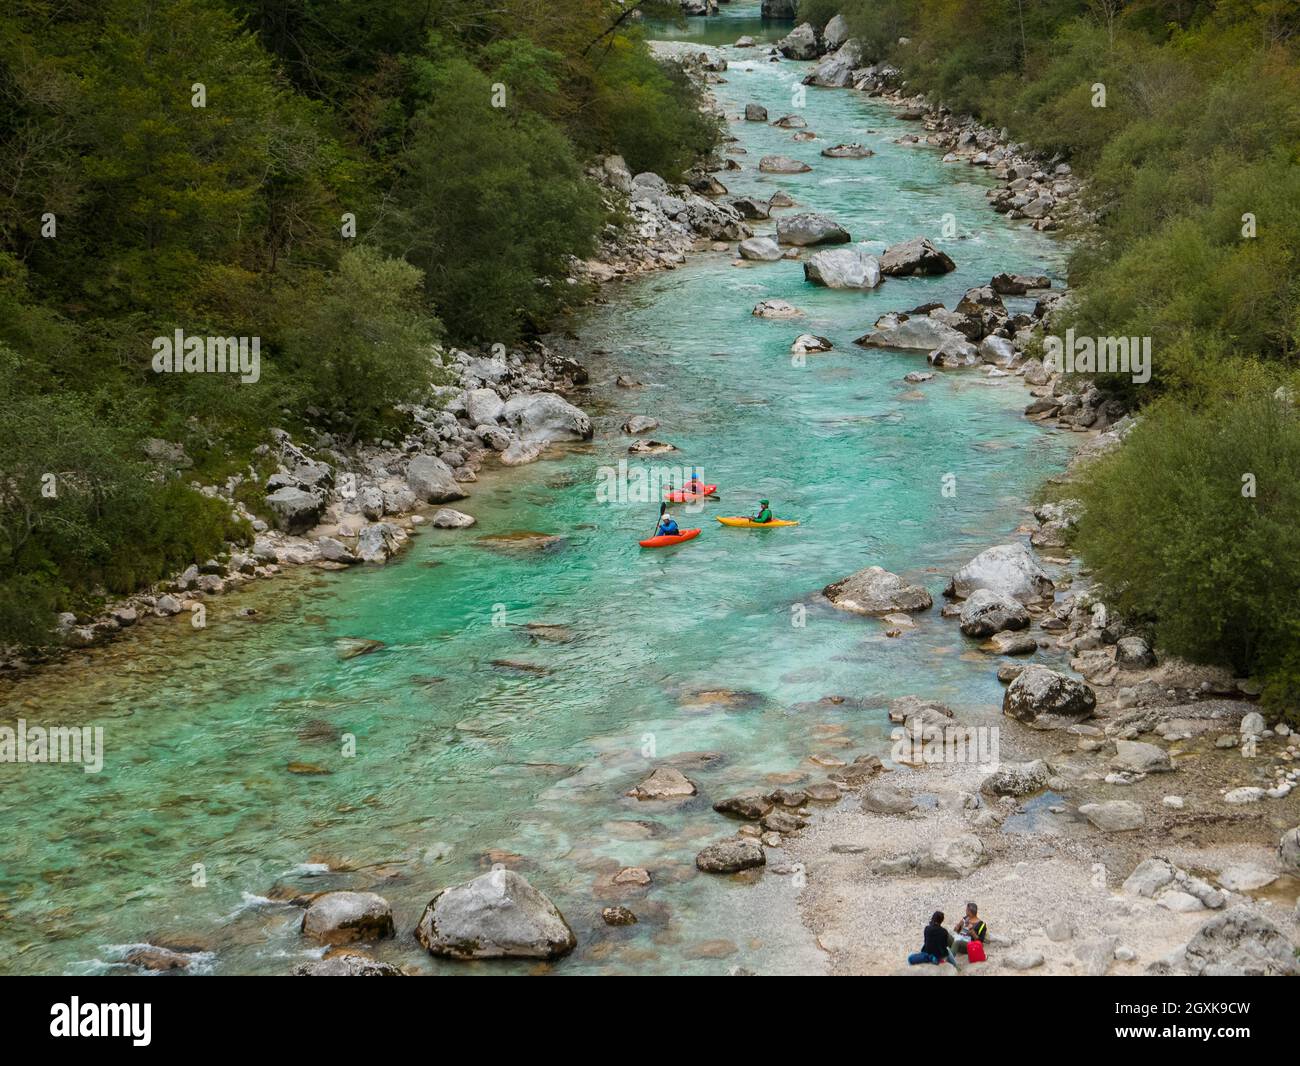 Kobarid, Slovenia (2 ottobre 2021) - l'acqua verde e limpida del fiume Soca (Isonzo) con molte persone che vi si kayak Foto Stock